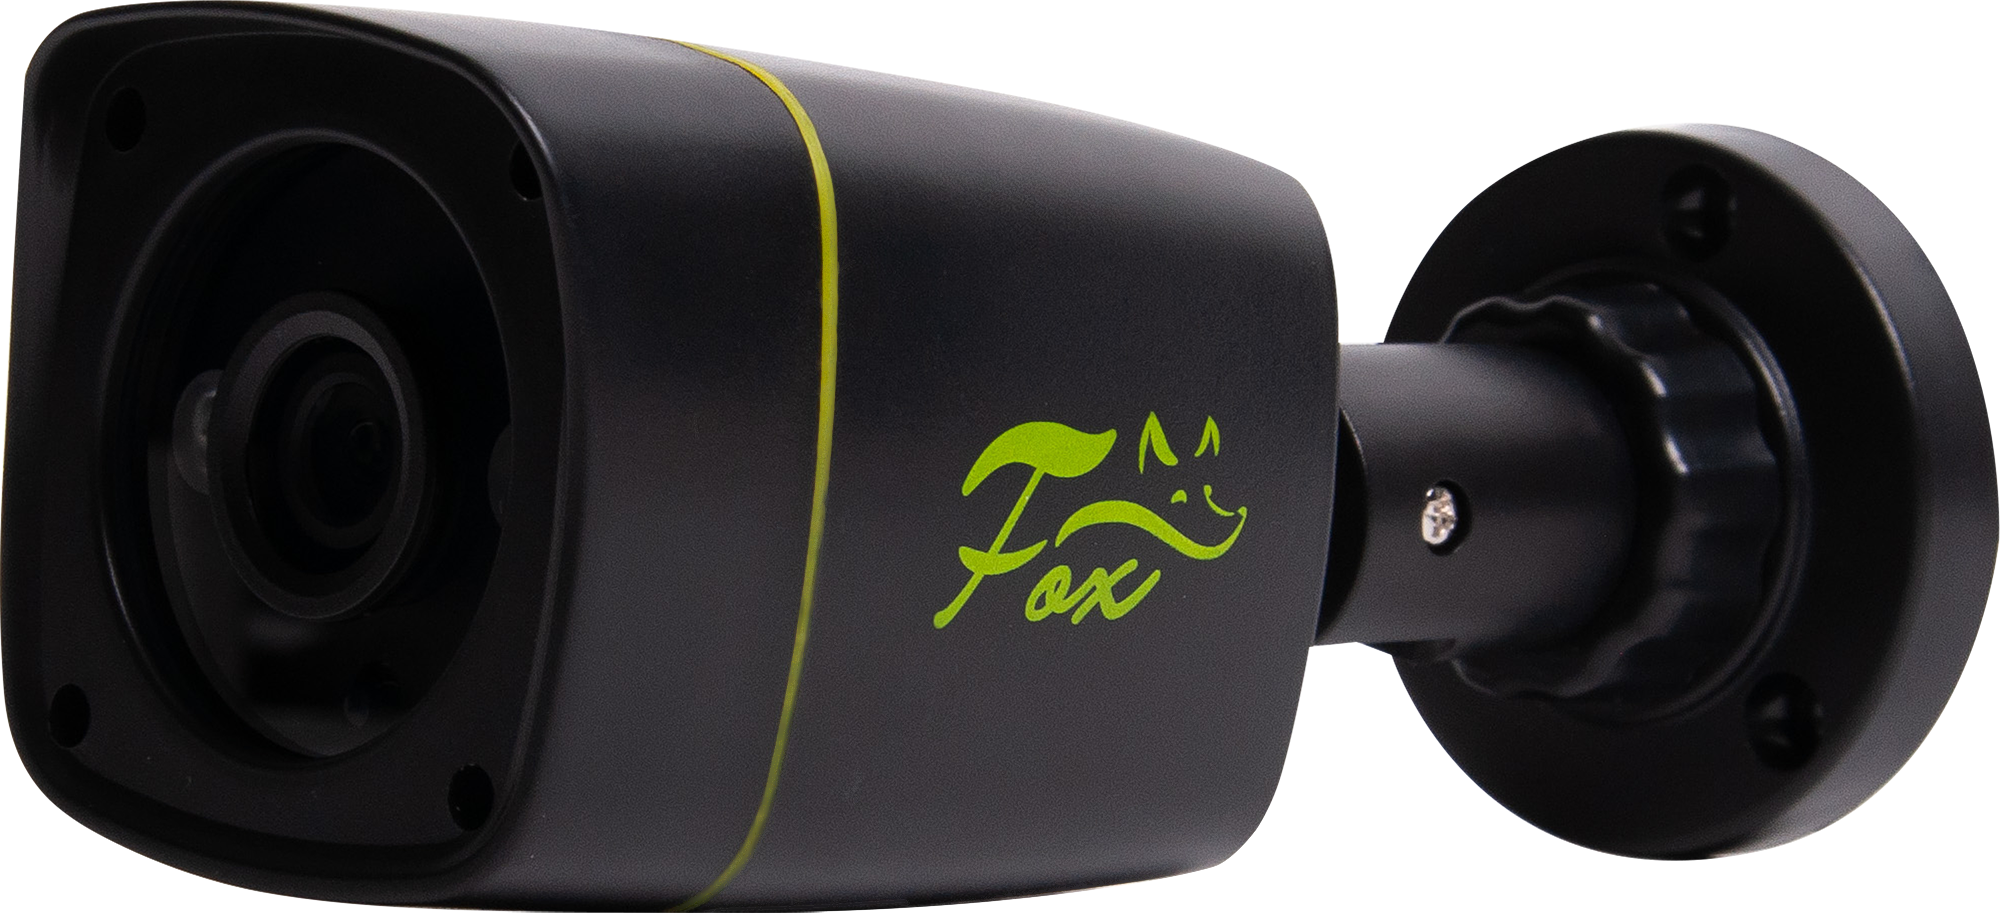 Fox видеонаблюдение. Комплект для видеонаблюдения Fox FX-KB 2 МП 1 камера цвет черный. Fox FX-kb2.